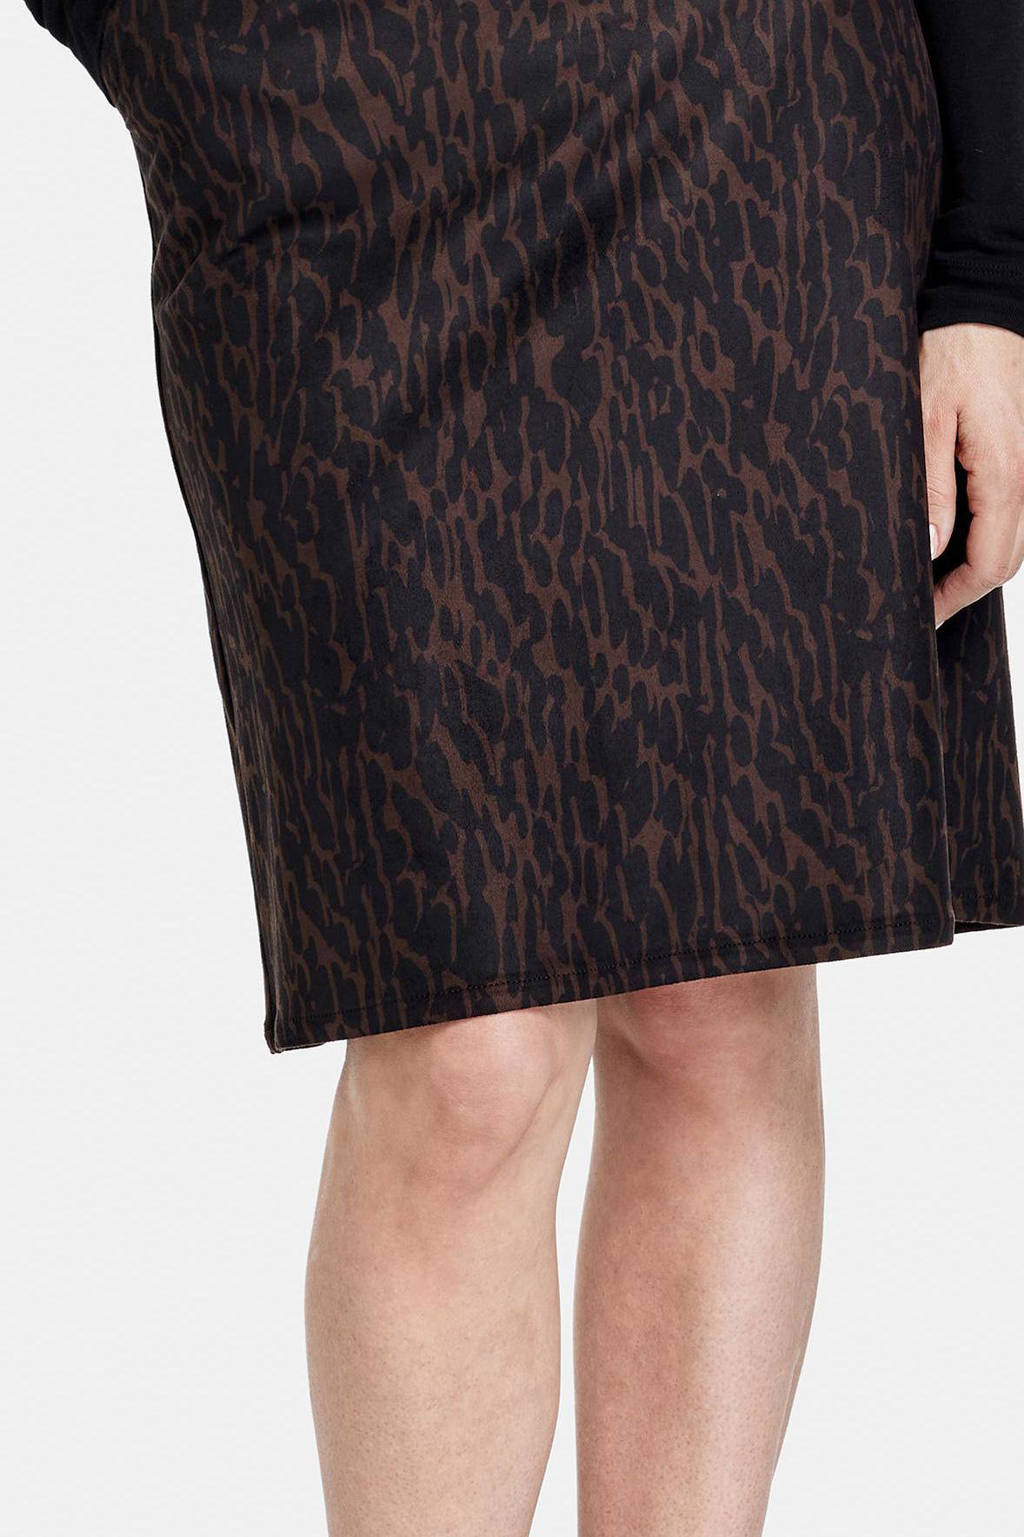 Merg onduidelijk Komst Gerry Weber rok met dierenprint bruin/zwart | wehkamp